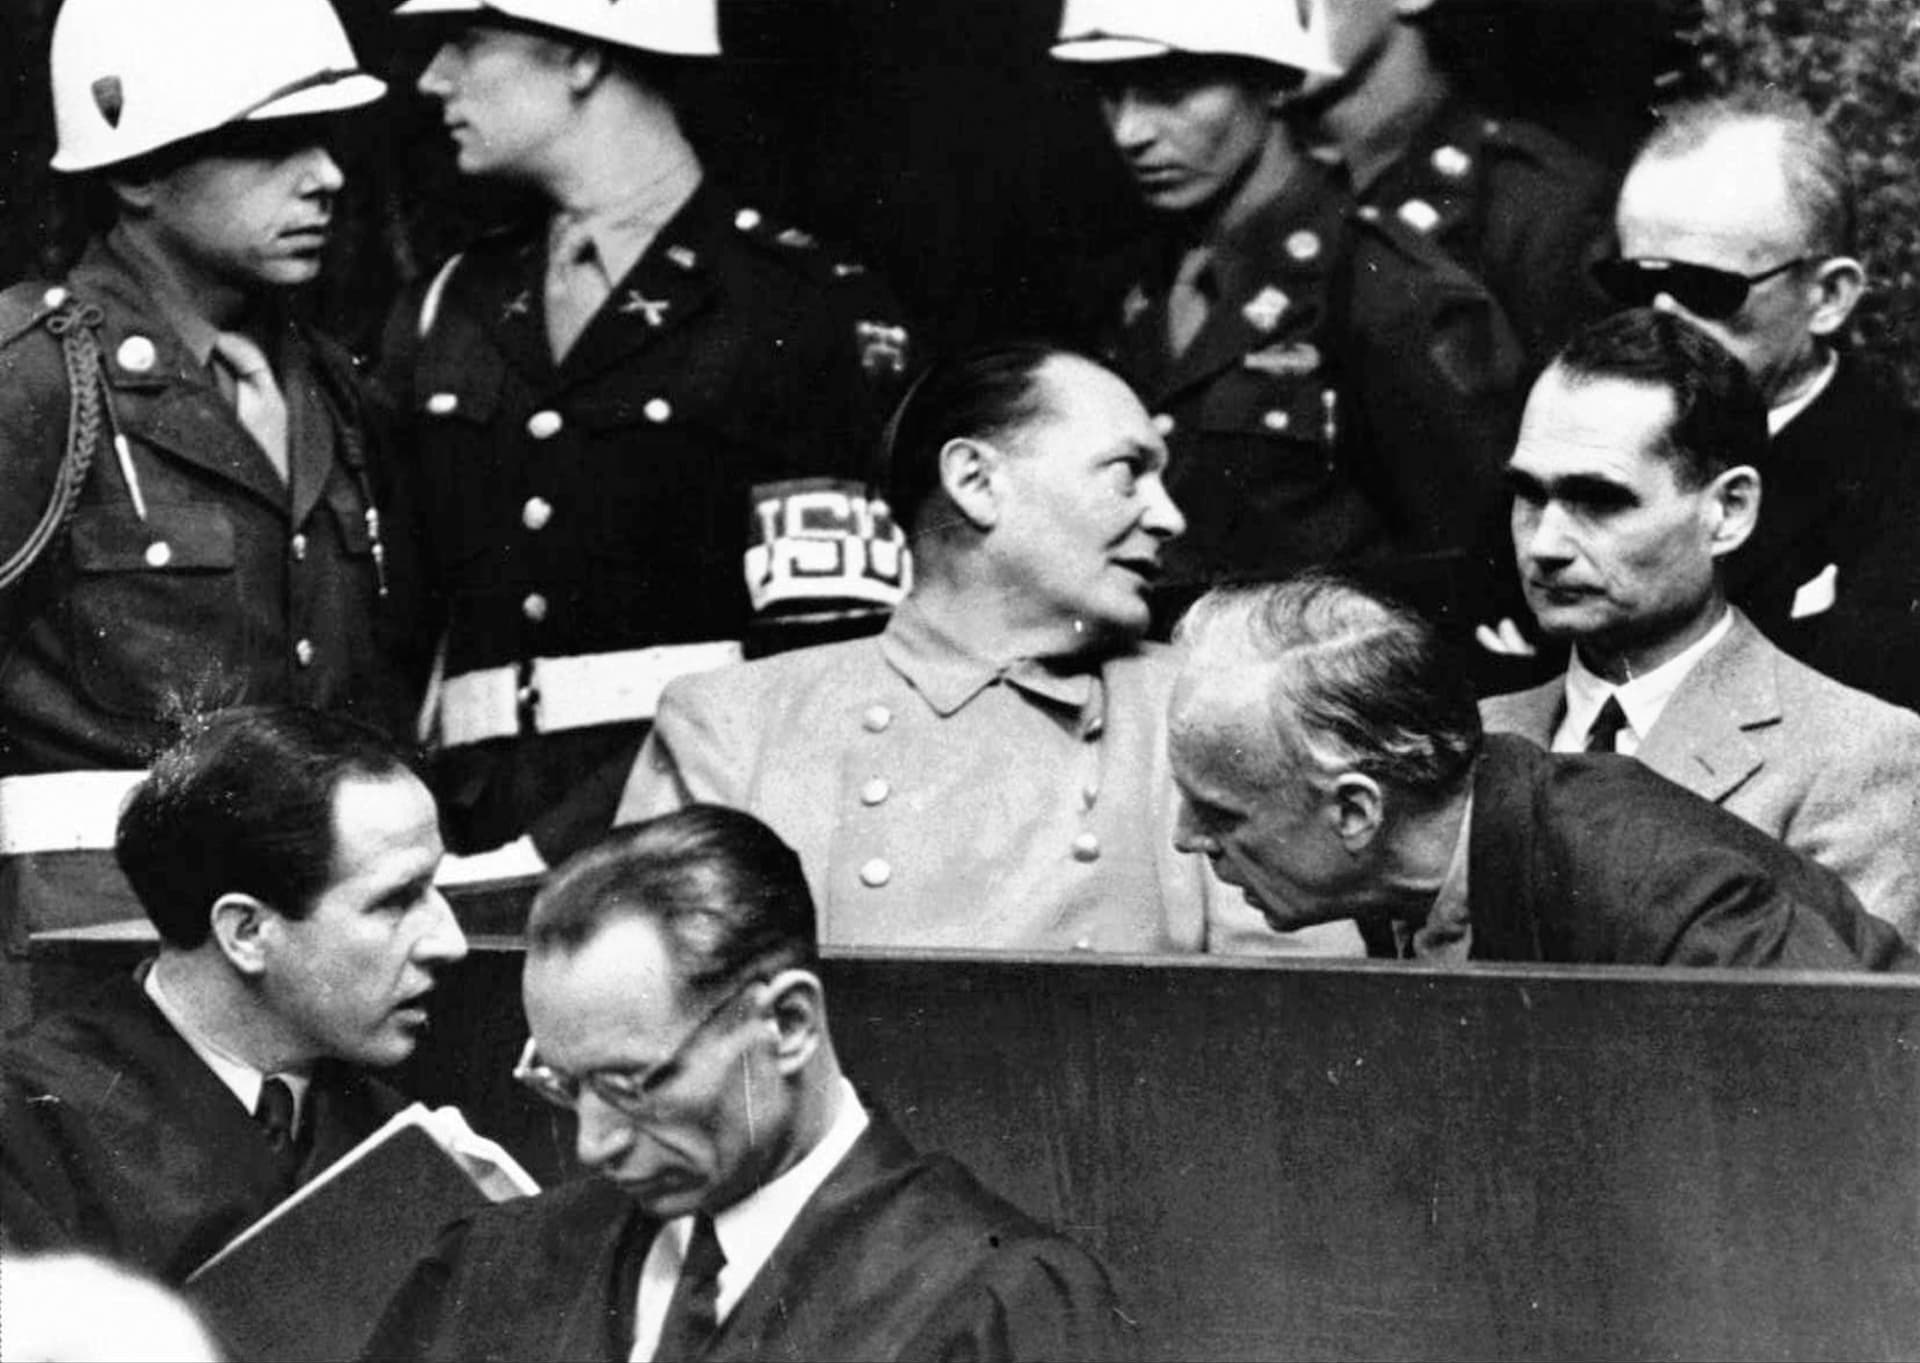 Rozsudek smrti si vyslechli například říšský protektor Čech a Moravy Wilhelm Frick, ministr zahraničních věcí Joachim von Ribbentrop či říšský maršál Hermann Göring.